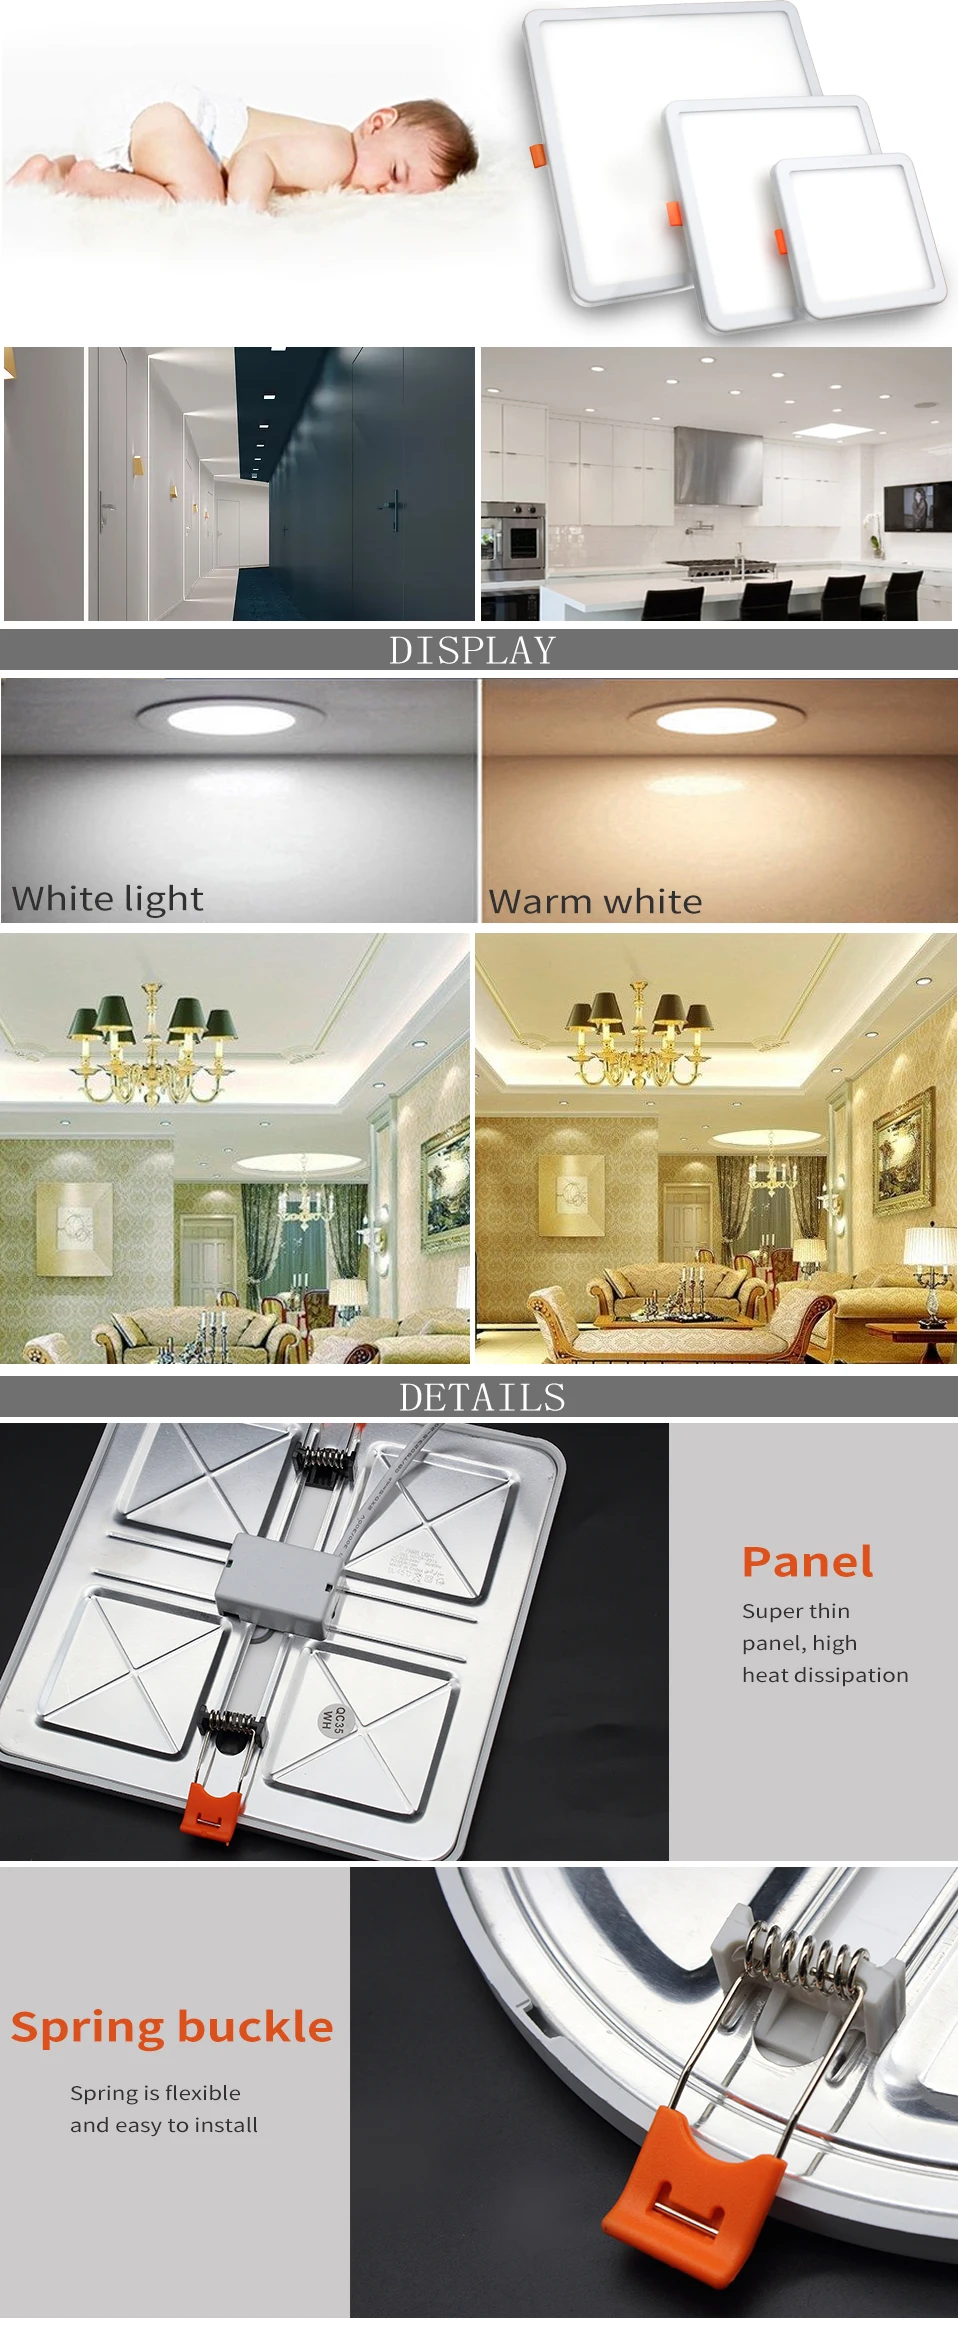 DINGDIAN светодиодный панельный светильник ультратонкая поверхность 6 Вт 8 Вт 15 Вт 20 Вт 220 В квадратная Круглая Панель Свет Белый/Теплый Крытый светодиодная лампа для спальни